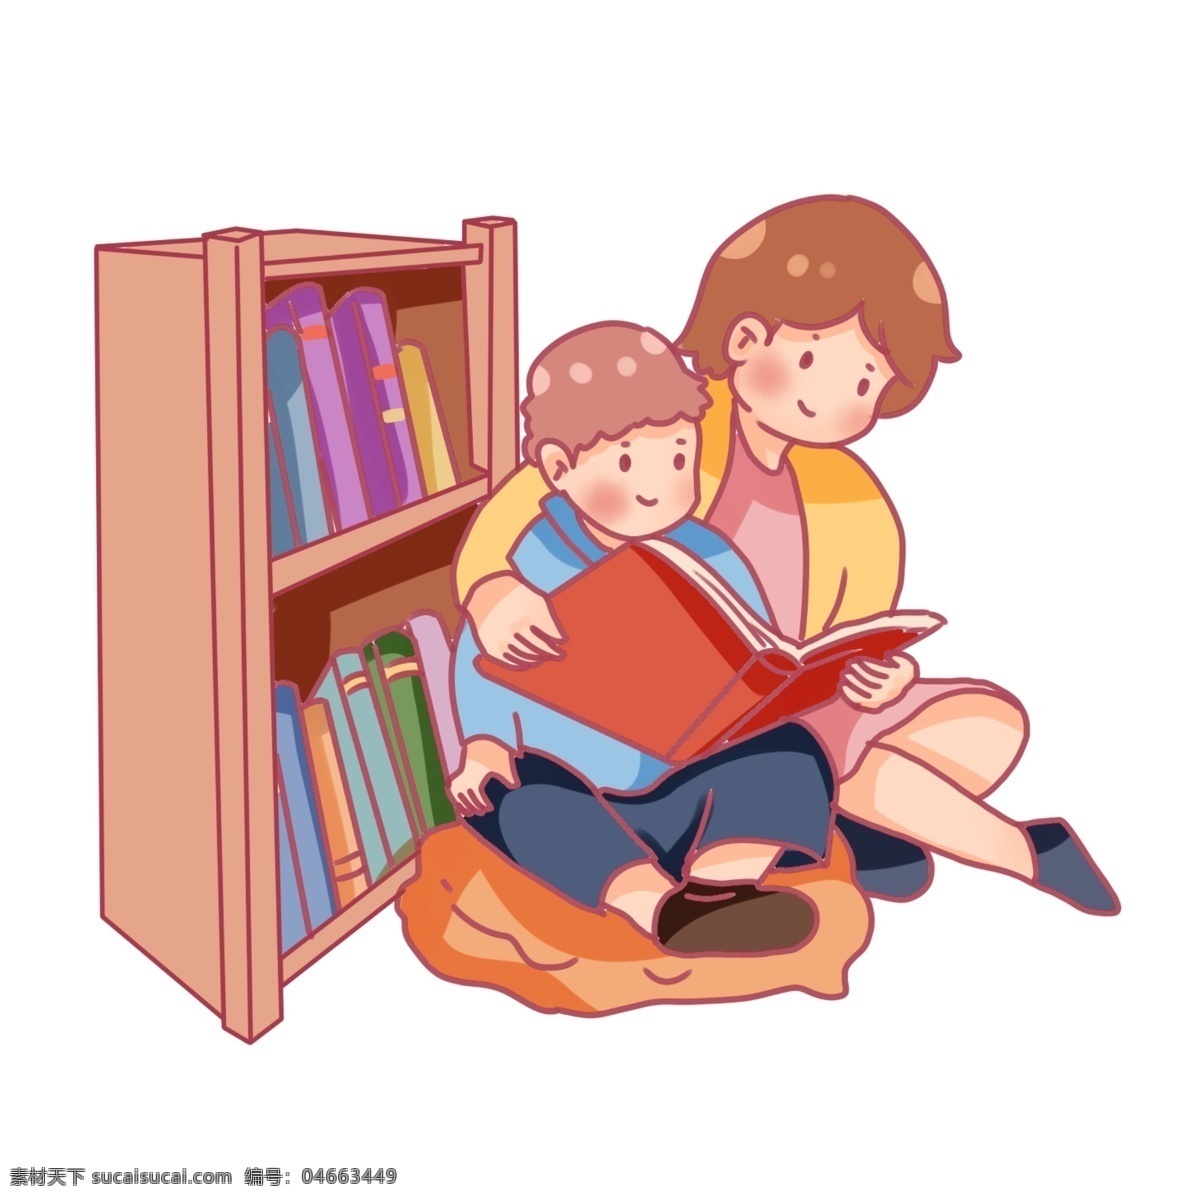 世界 读书 日 陪 孩子 世界读书日 陪孩子 看书 学习 书本 知识 读书分享 卡通 q版 书架 阅读 坐着